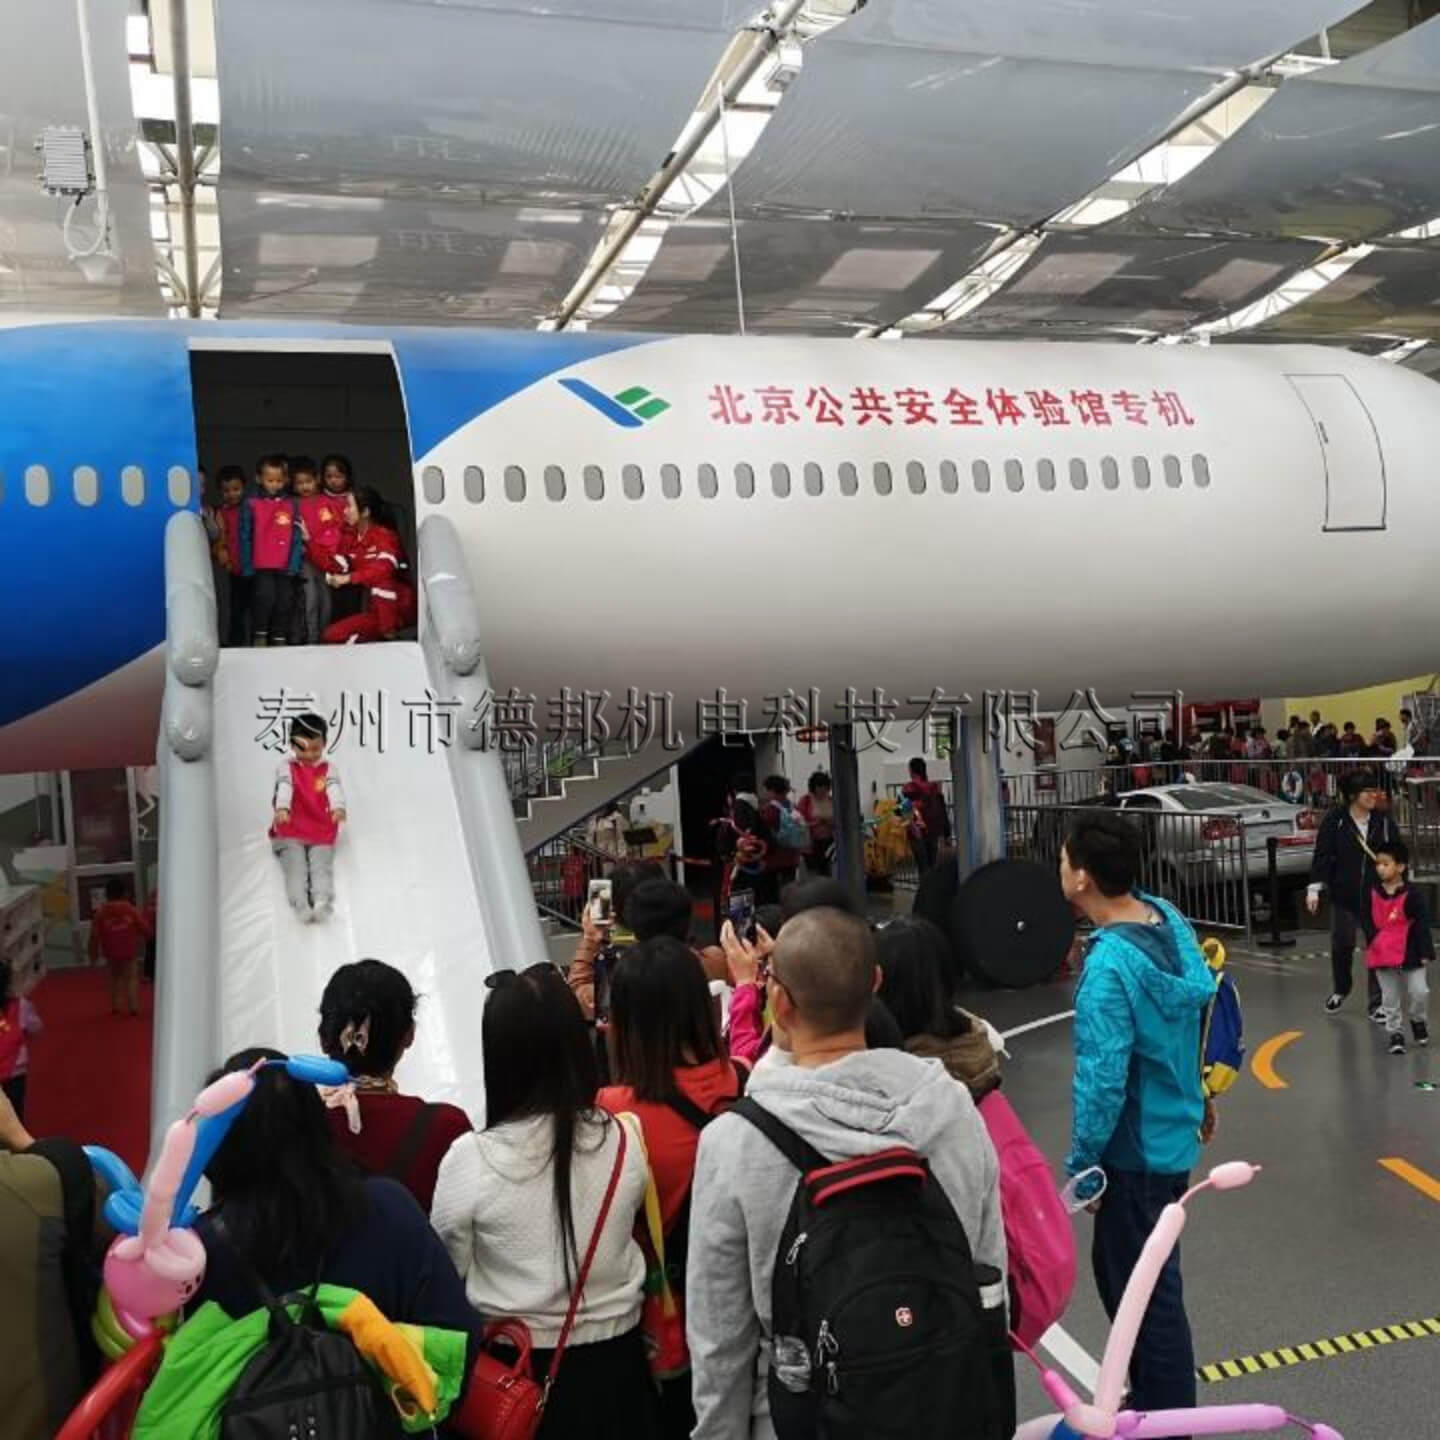 北京公共安全体验馆-飞机滑梯逃生体验 (2)